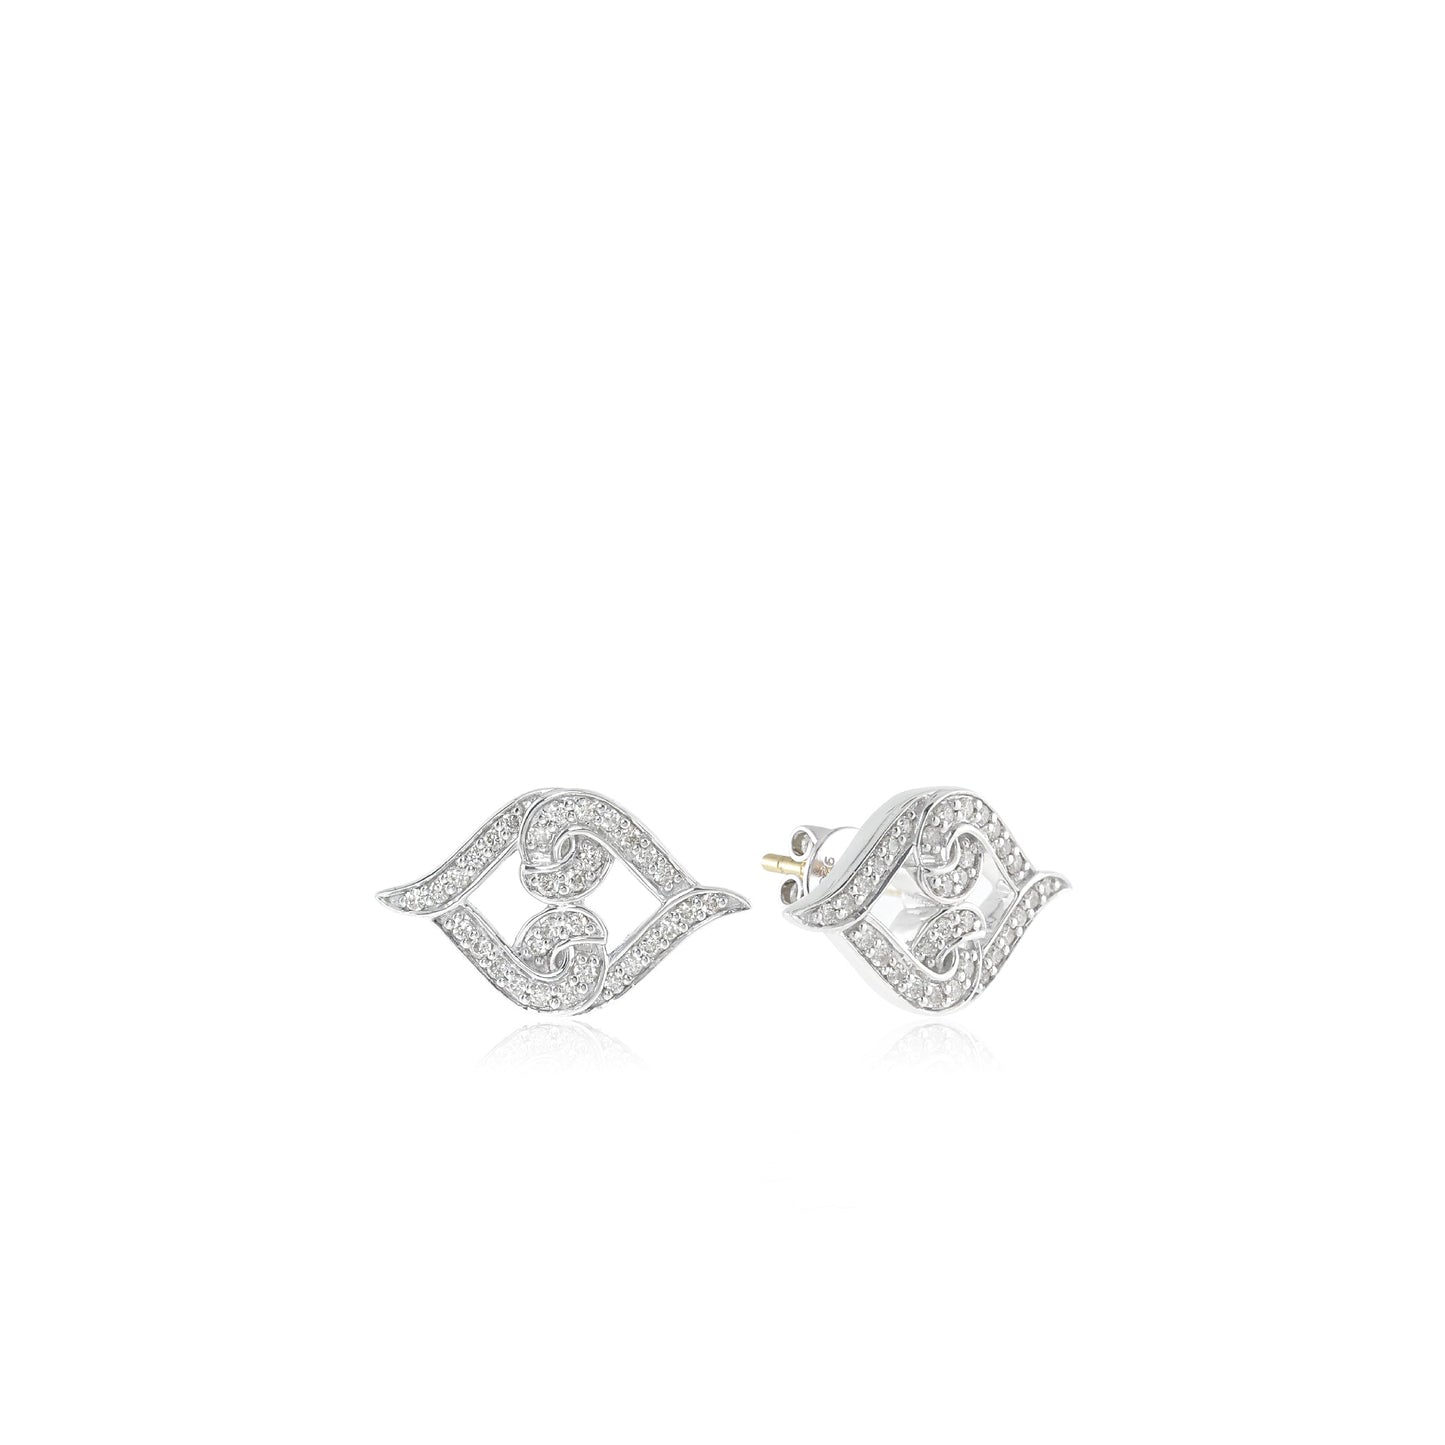 Silver Diamond Studs | Sterling Silver Diamond Stud Earrings